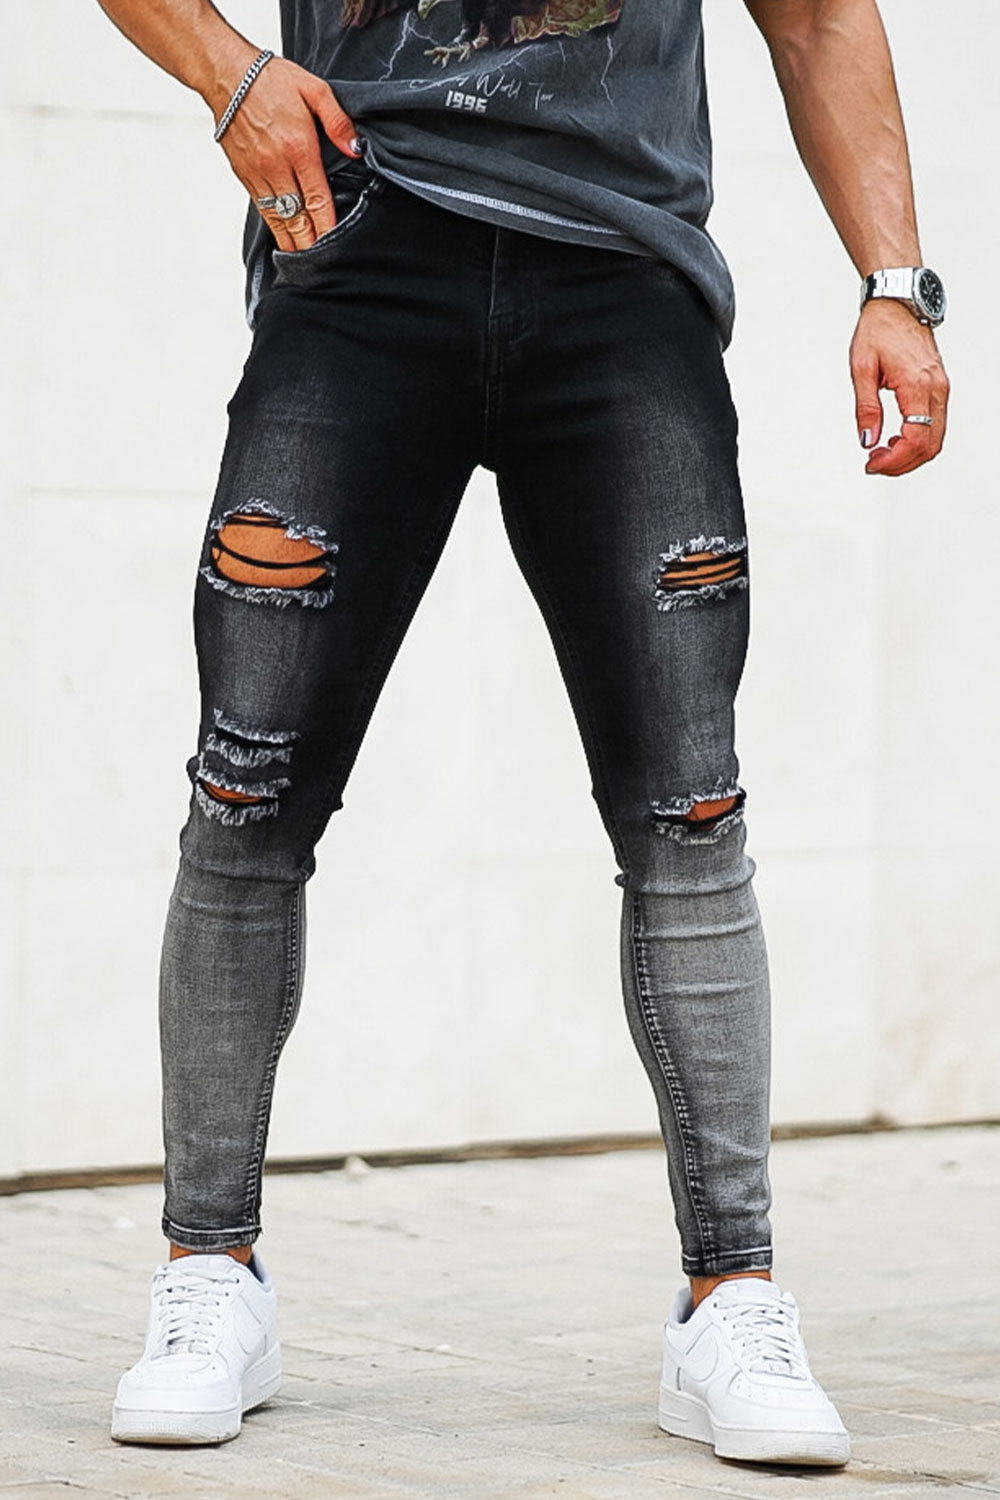 Vintage Skinny Jeans - Black And Grey